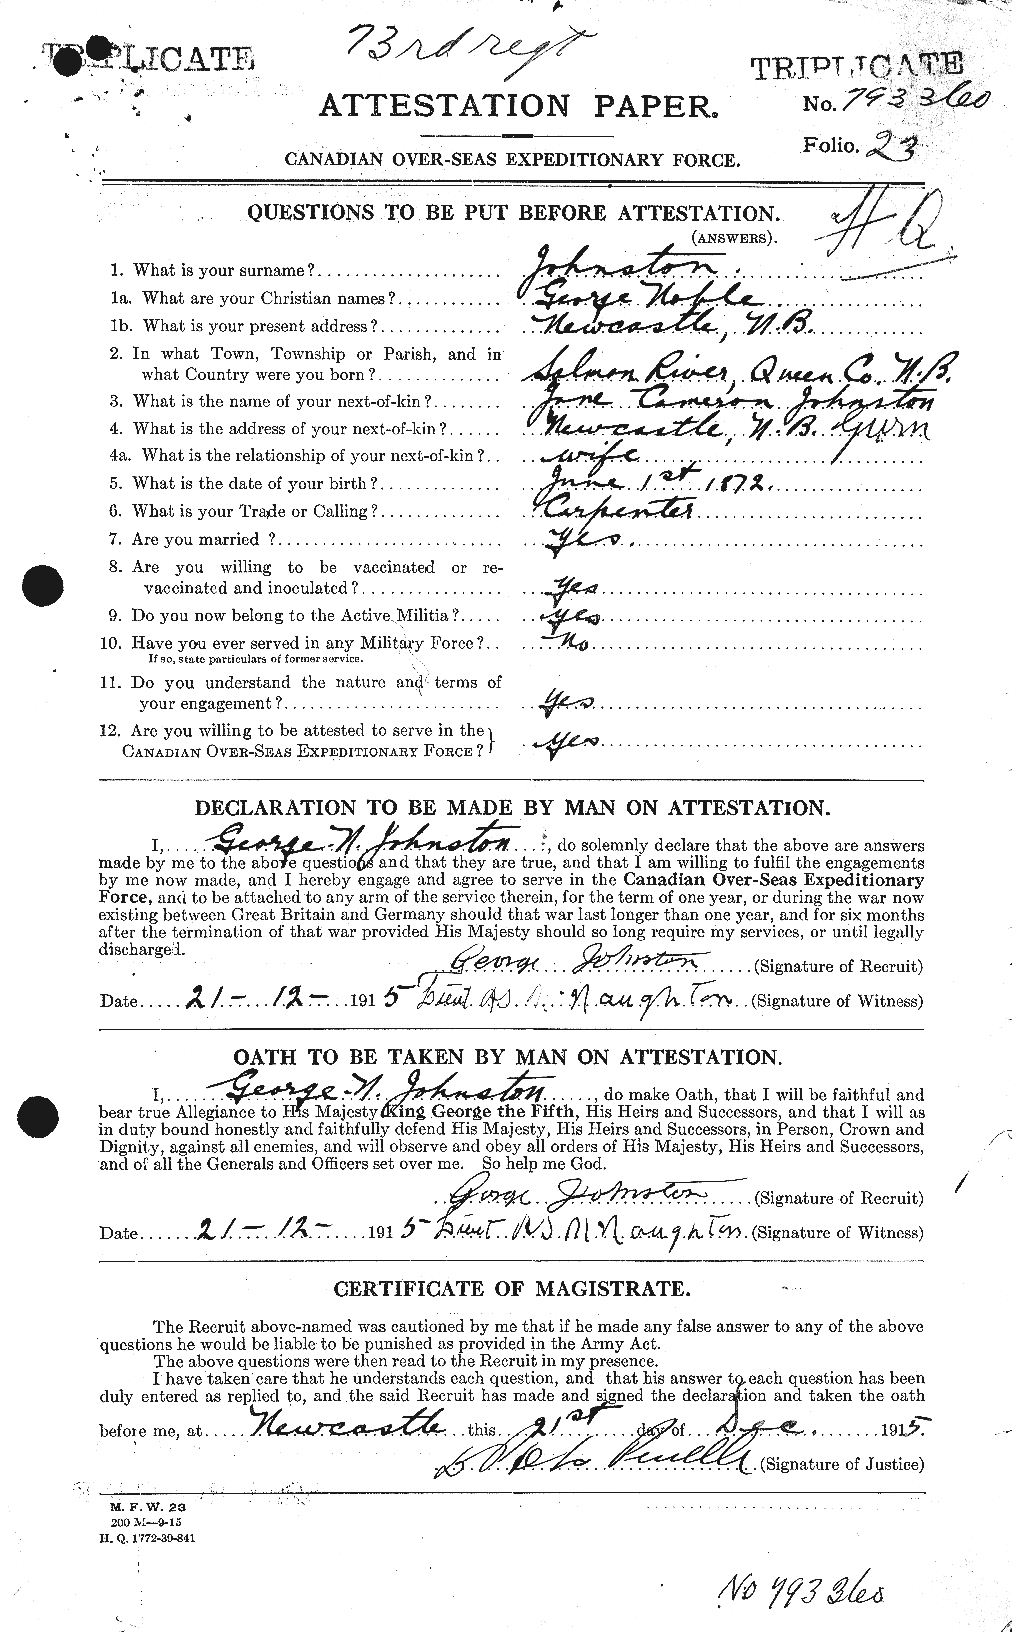 Dossiers du Personnel de la Première Guerre mondiale - CEC 419441a